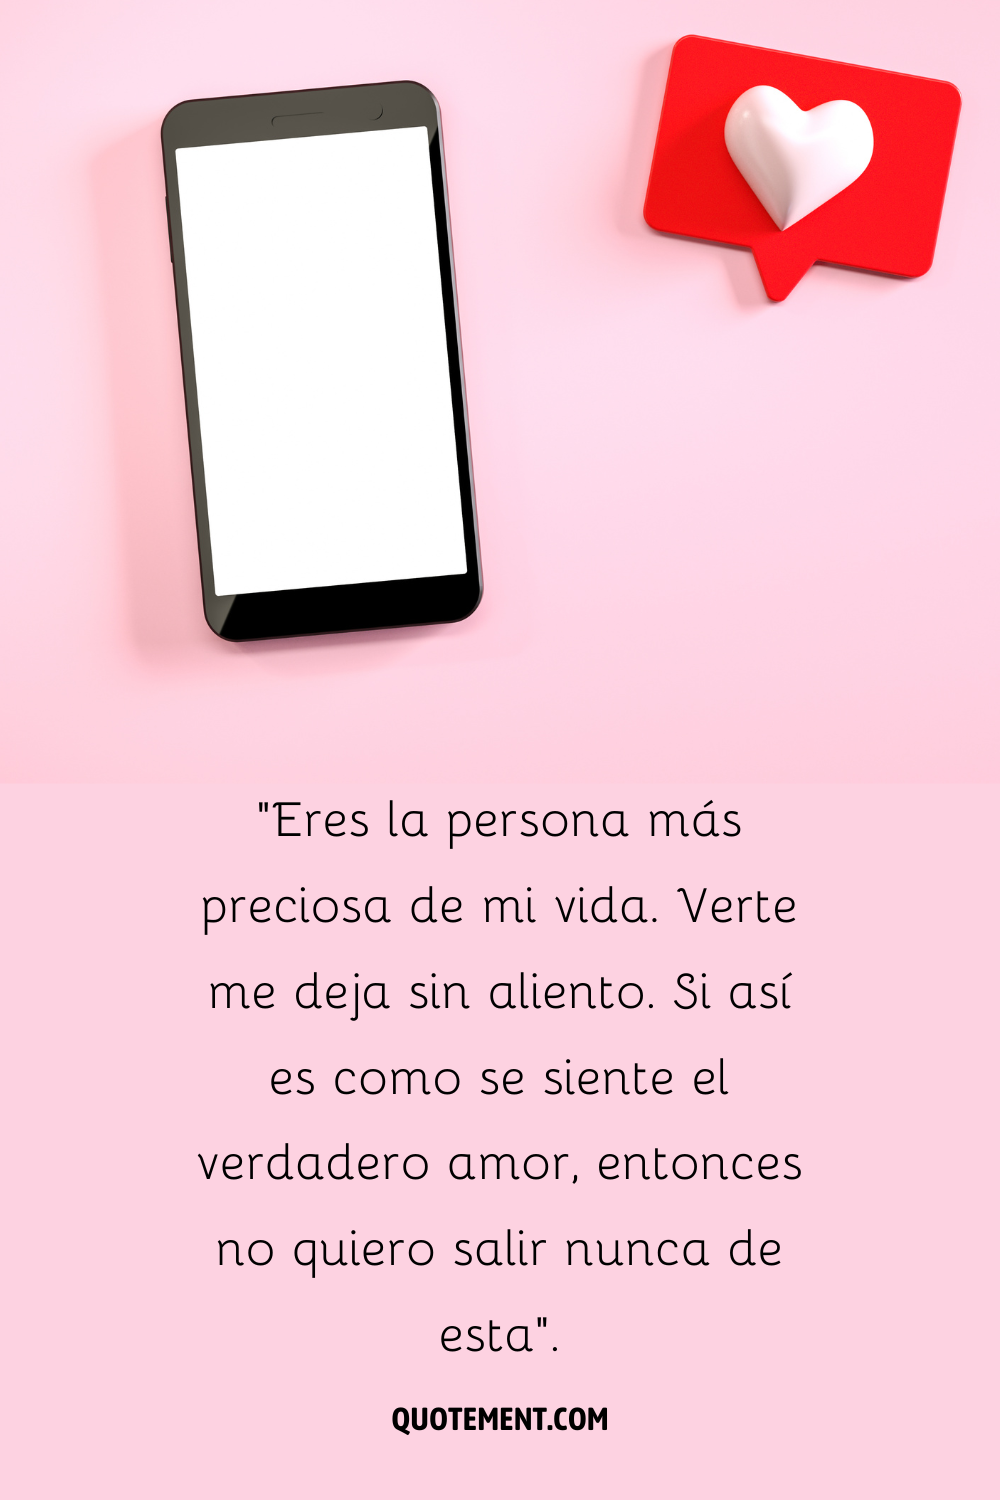 Un teléfono con una pantalla blanca y un globo de diálogo rojo con un corazón blanco al lado